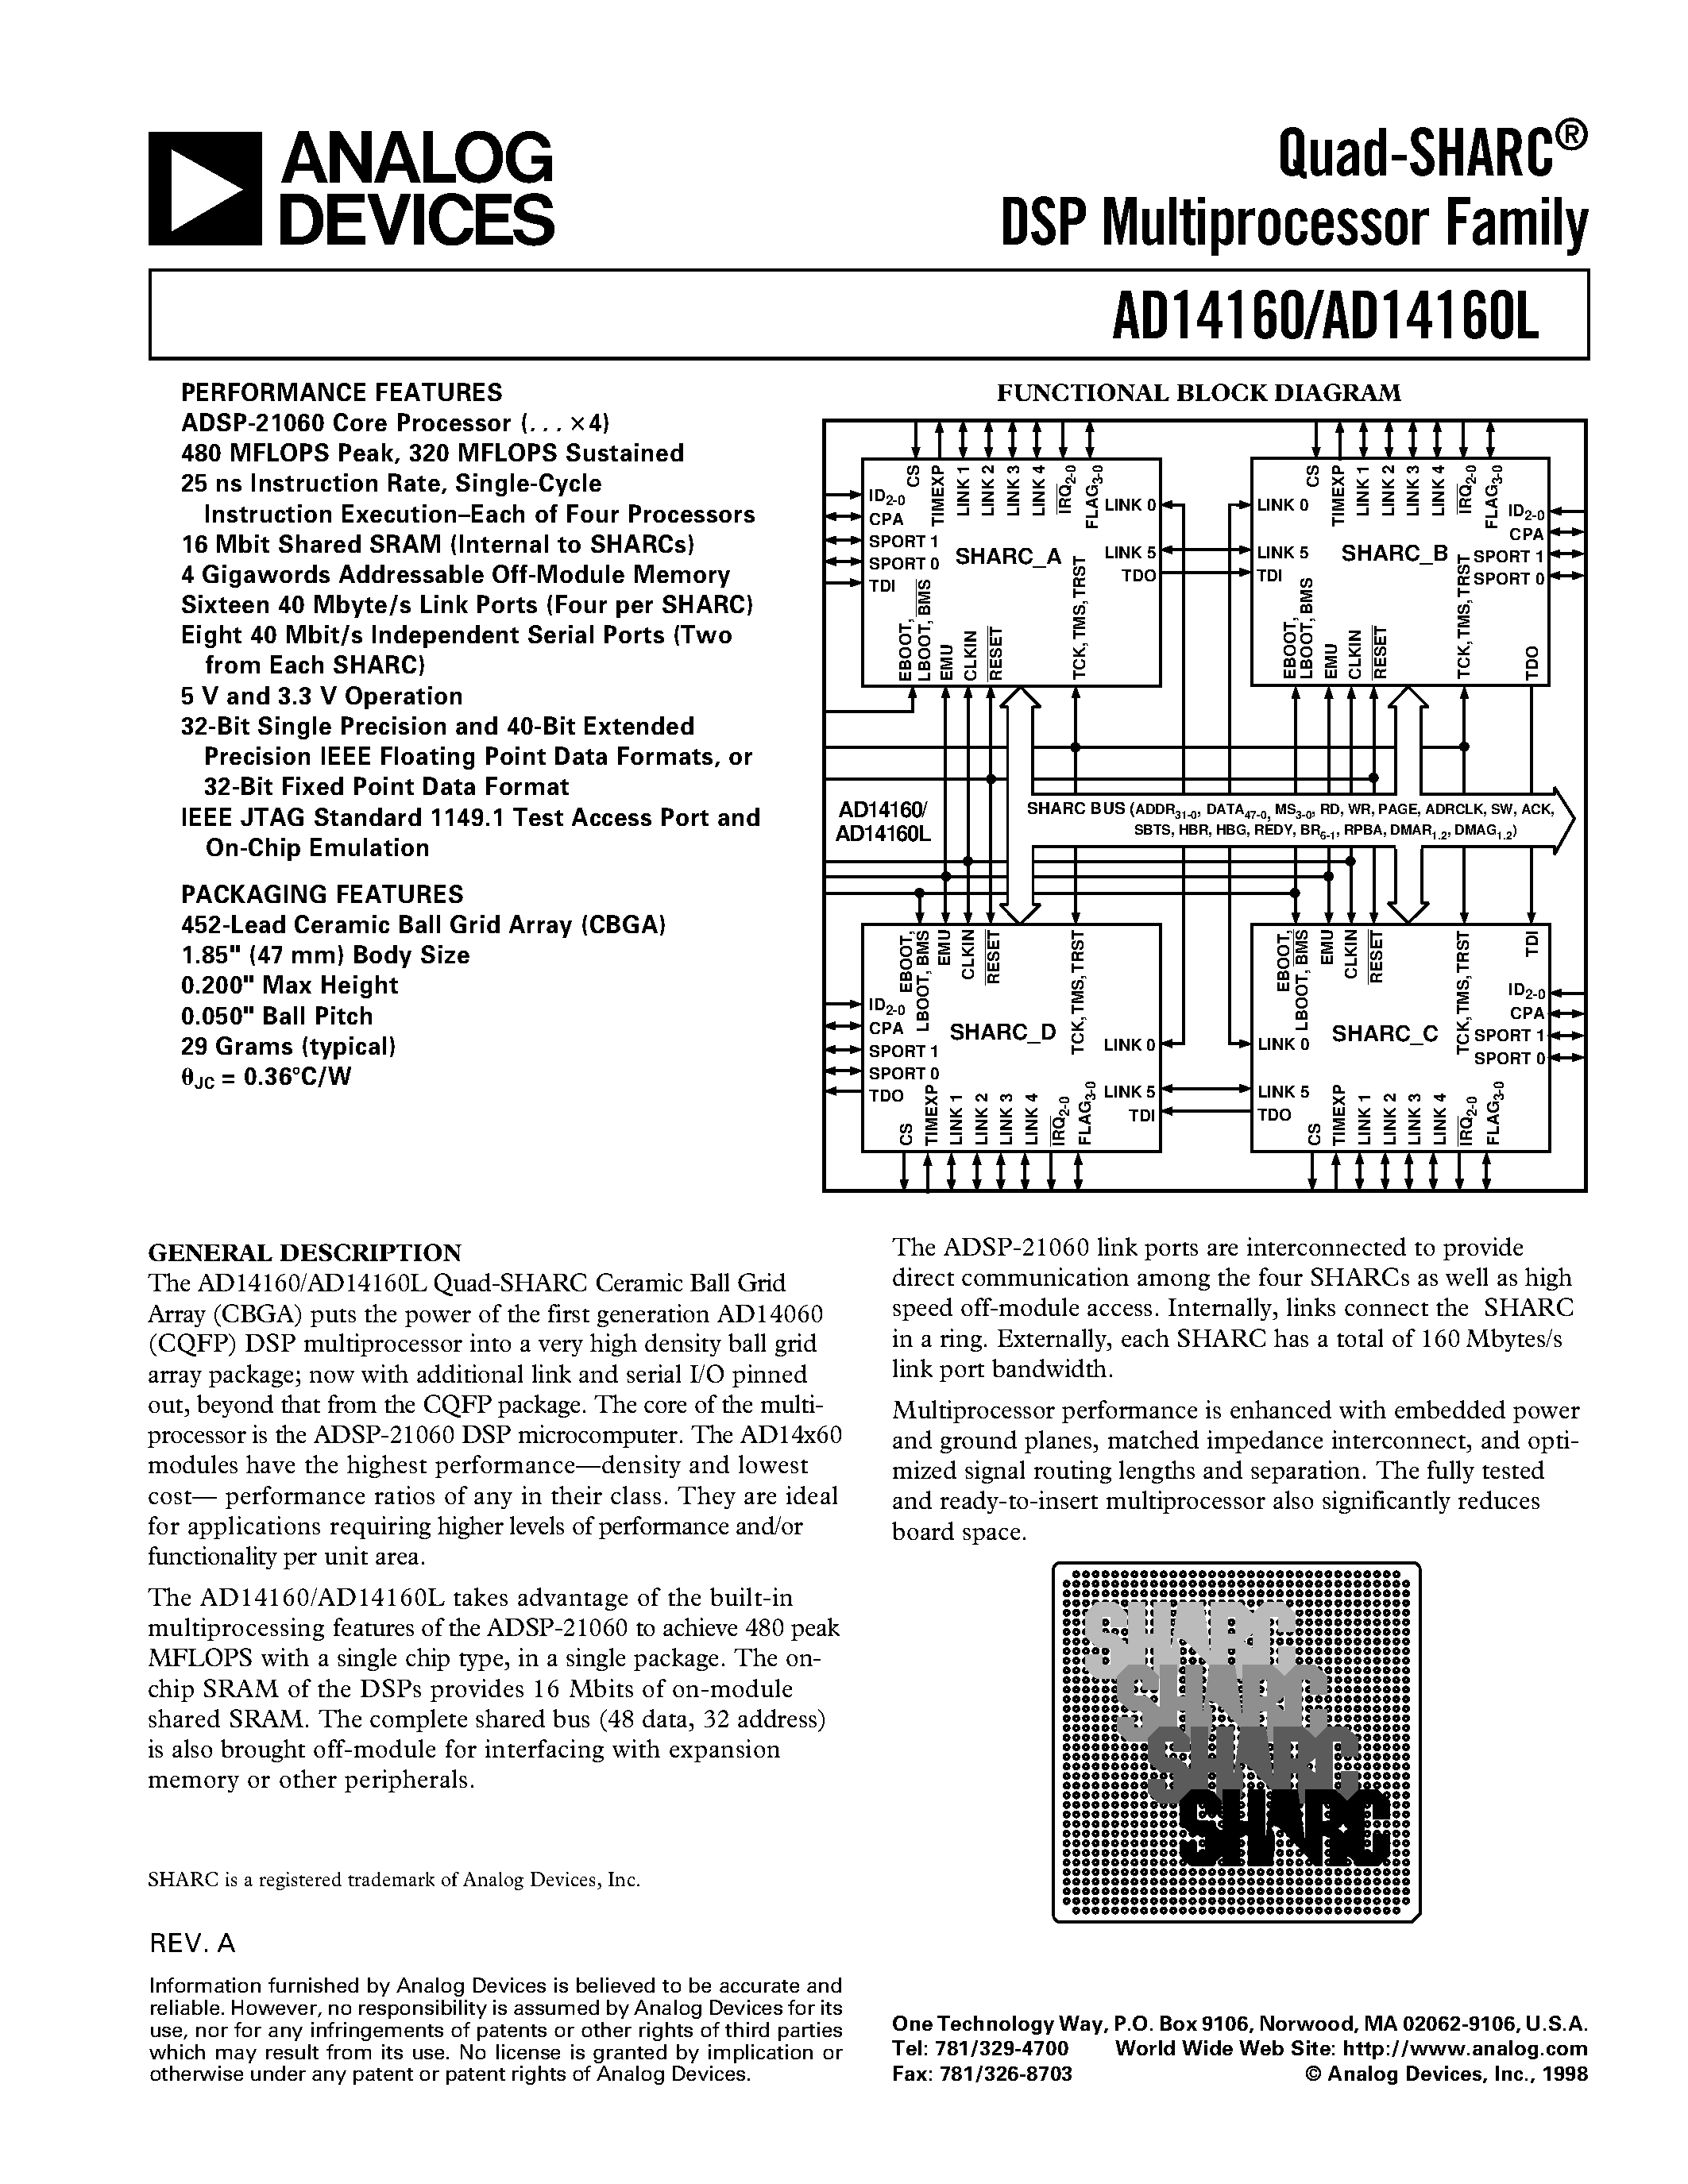 Даташит AD14160KB-4 - Quad-SHARC DSP Multiprocessor Family страница 1